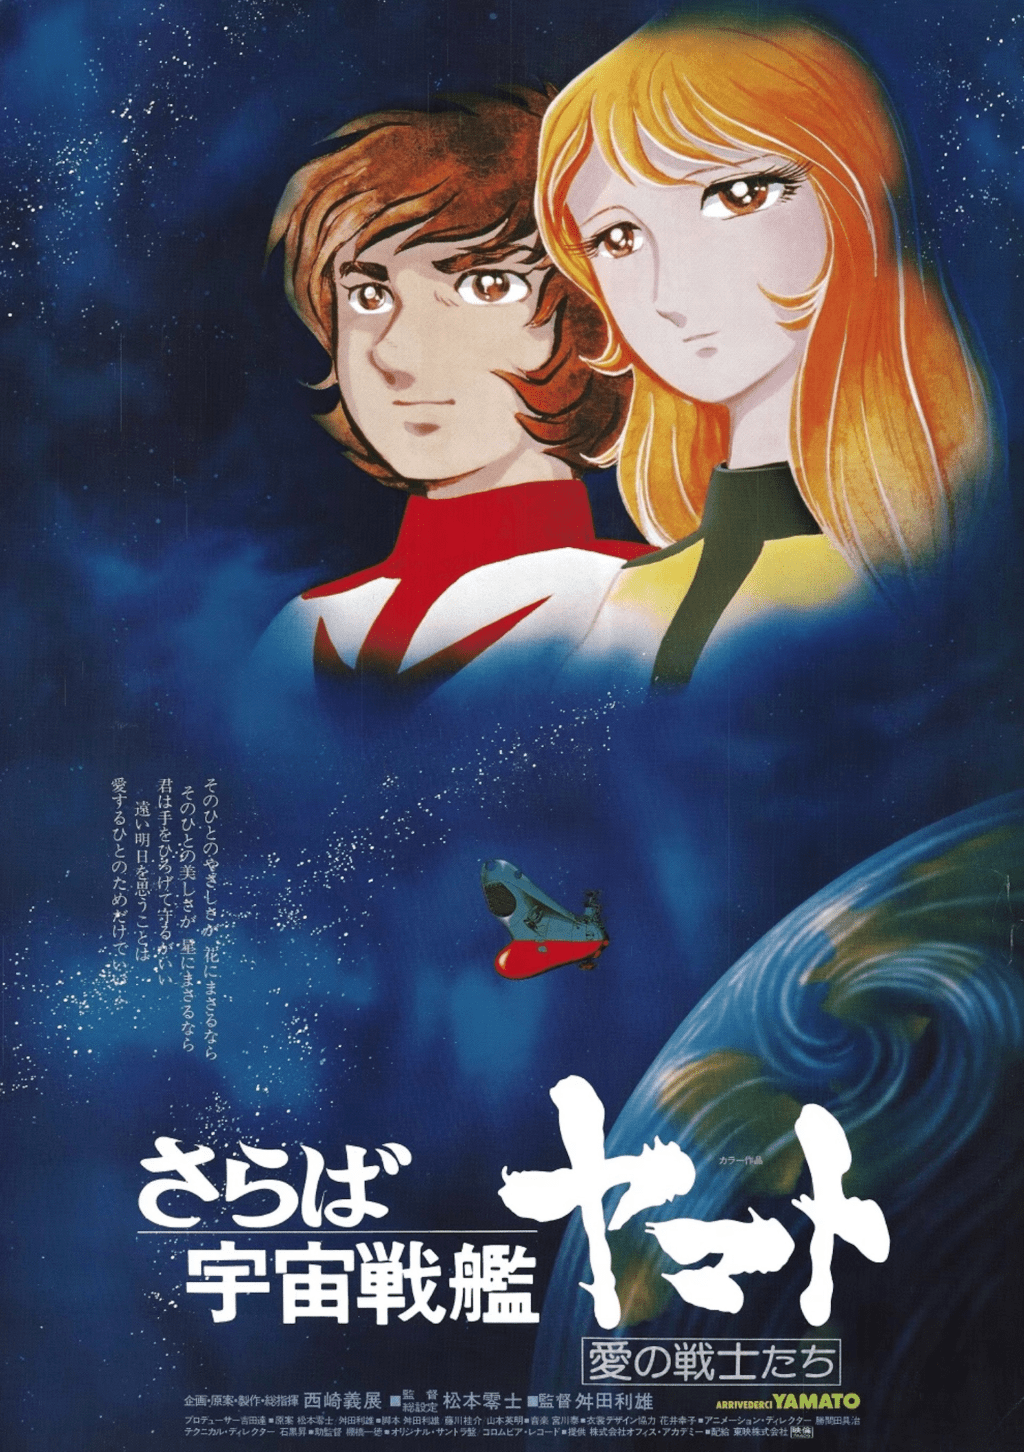 《宇宙戰艦大和號》是日本最具影響力的動漫系列之一。其故事以嚴肅的主題和複雜的故事情節為主軸，在播映後大獲好評，因而引起了科幻動畫片的熱潮。